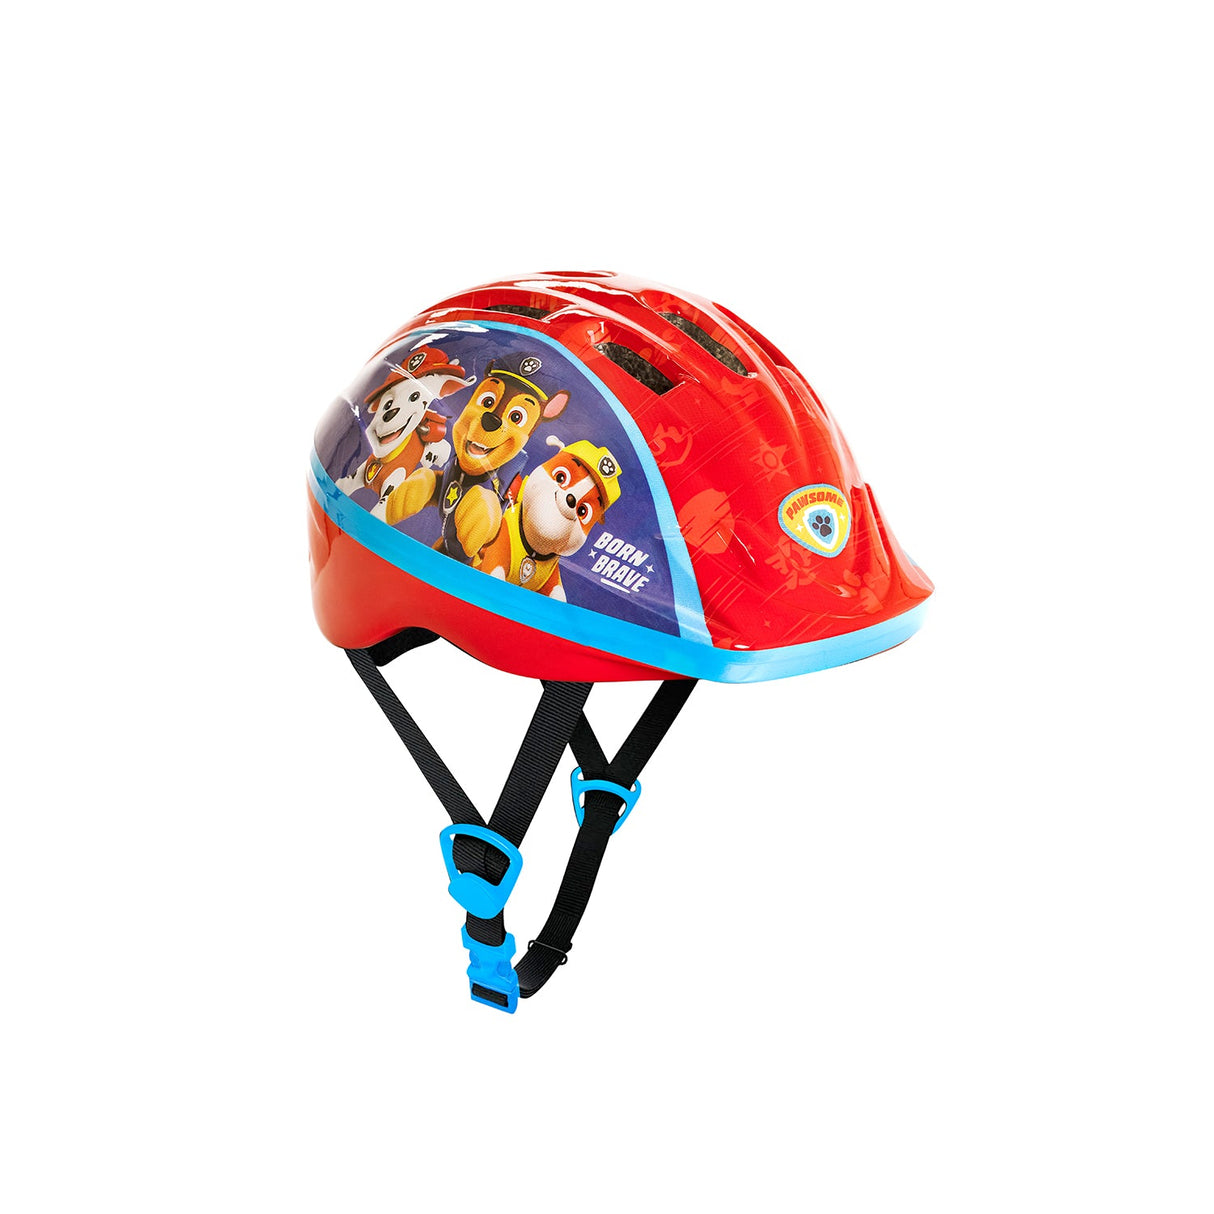 Spartan Nickelodeon Paw Patrol Helmet New